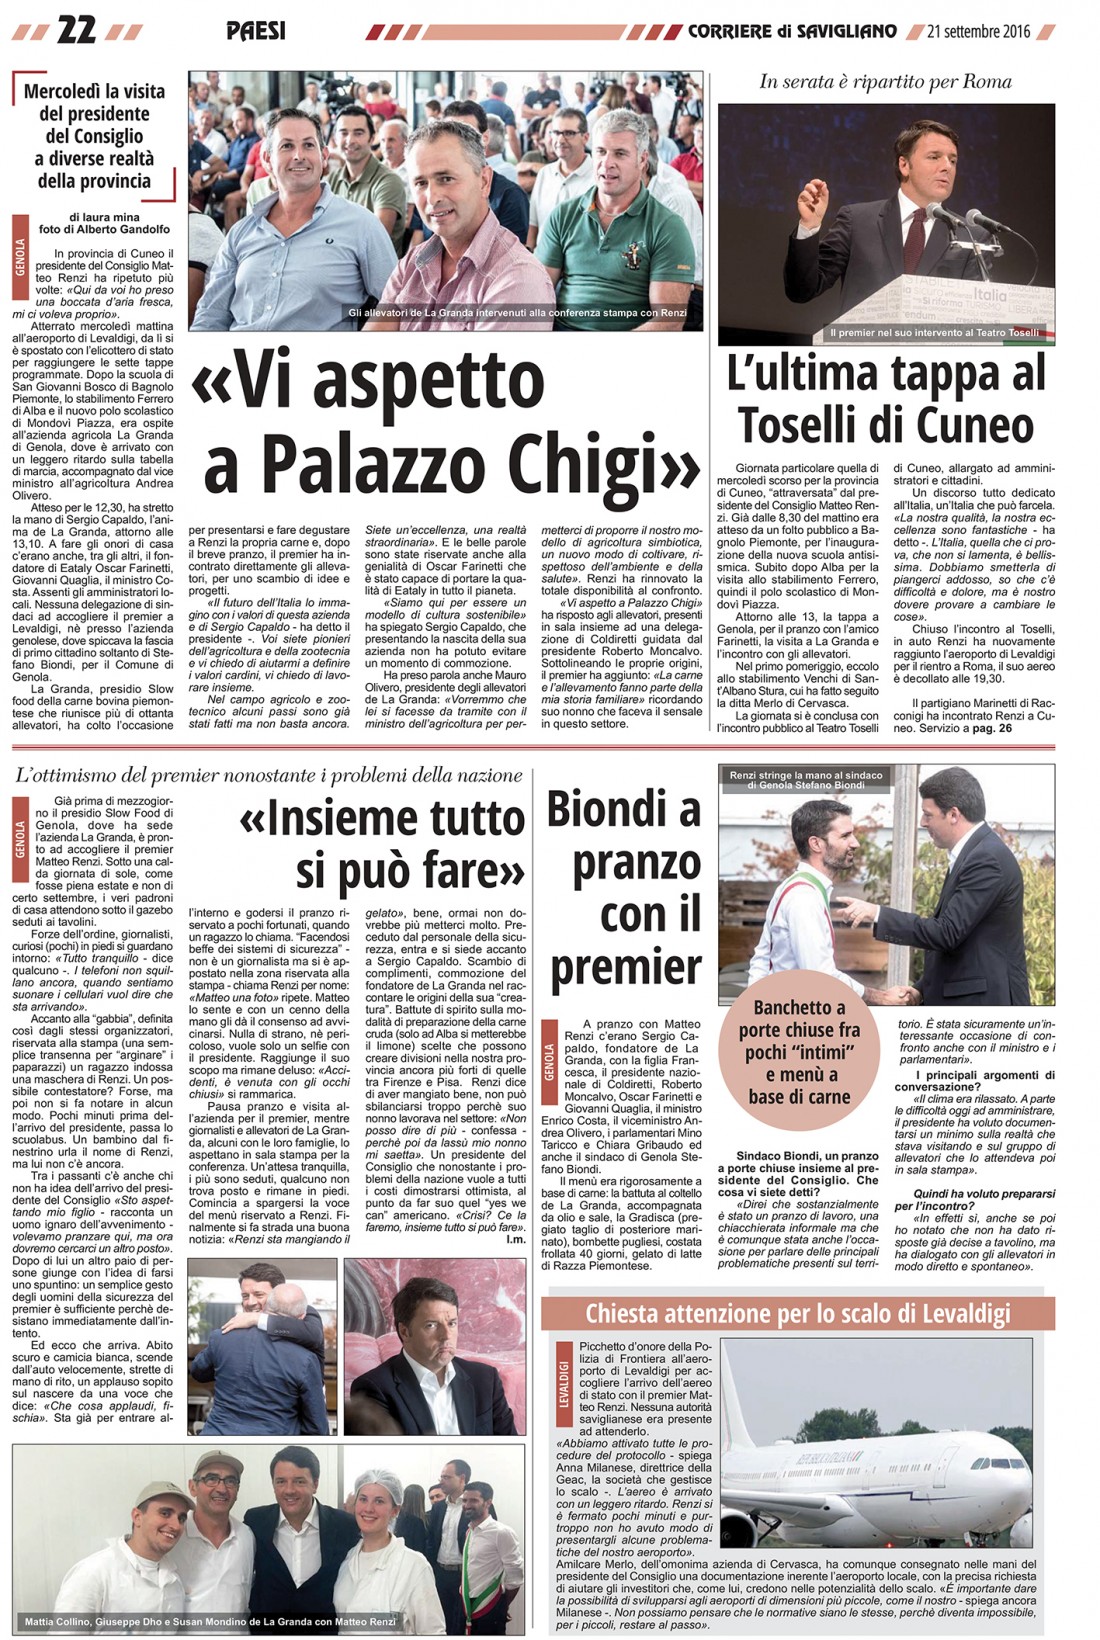 Corriere di Savigliano - Renzi a La Granda